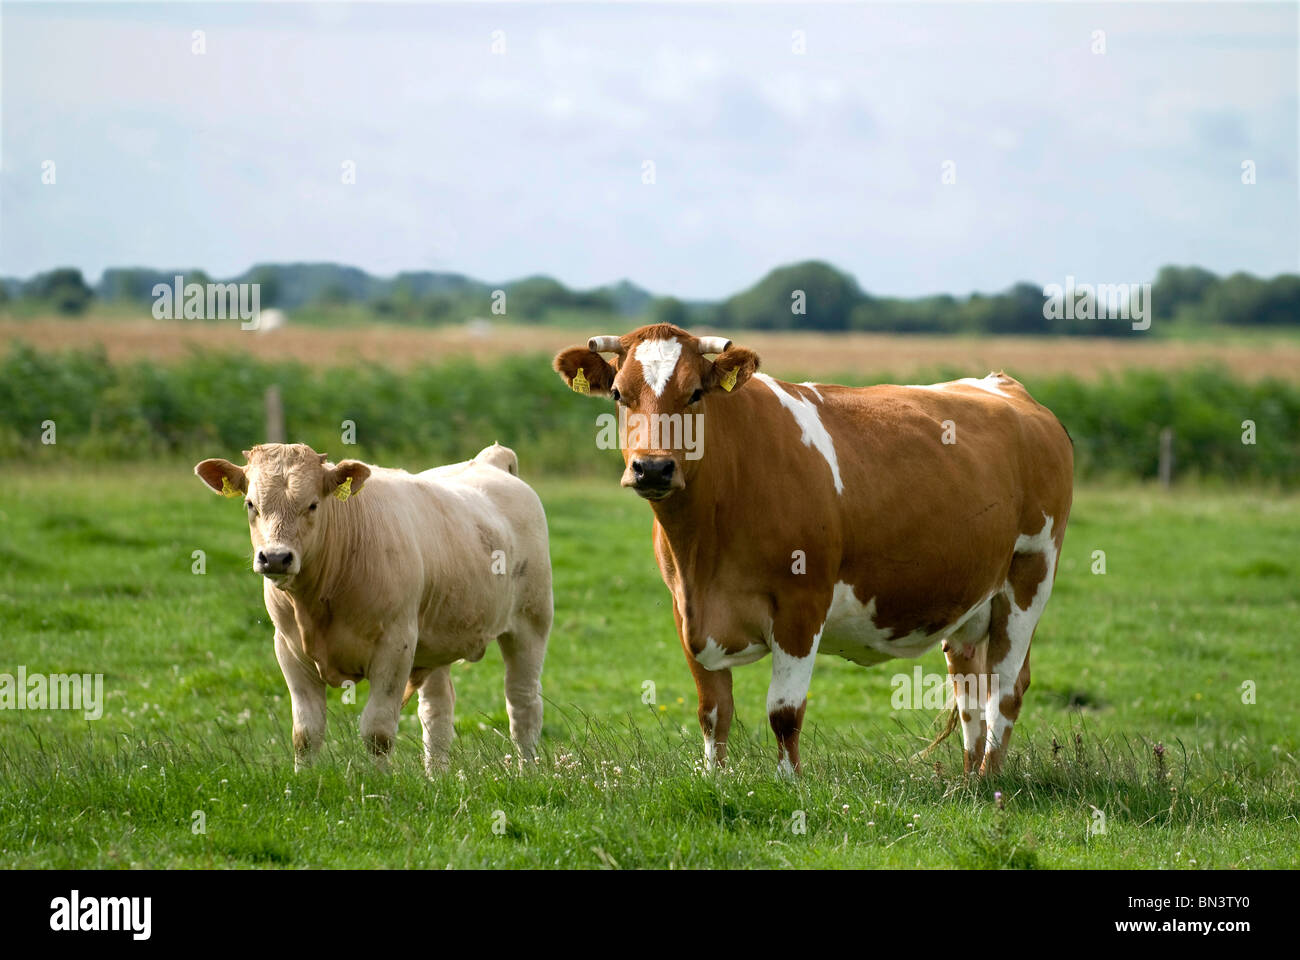 Cattle in field Stock Photo